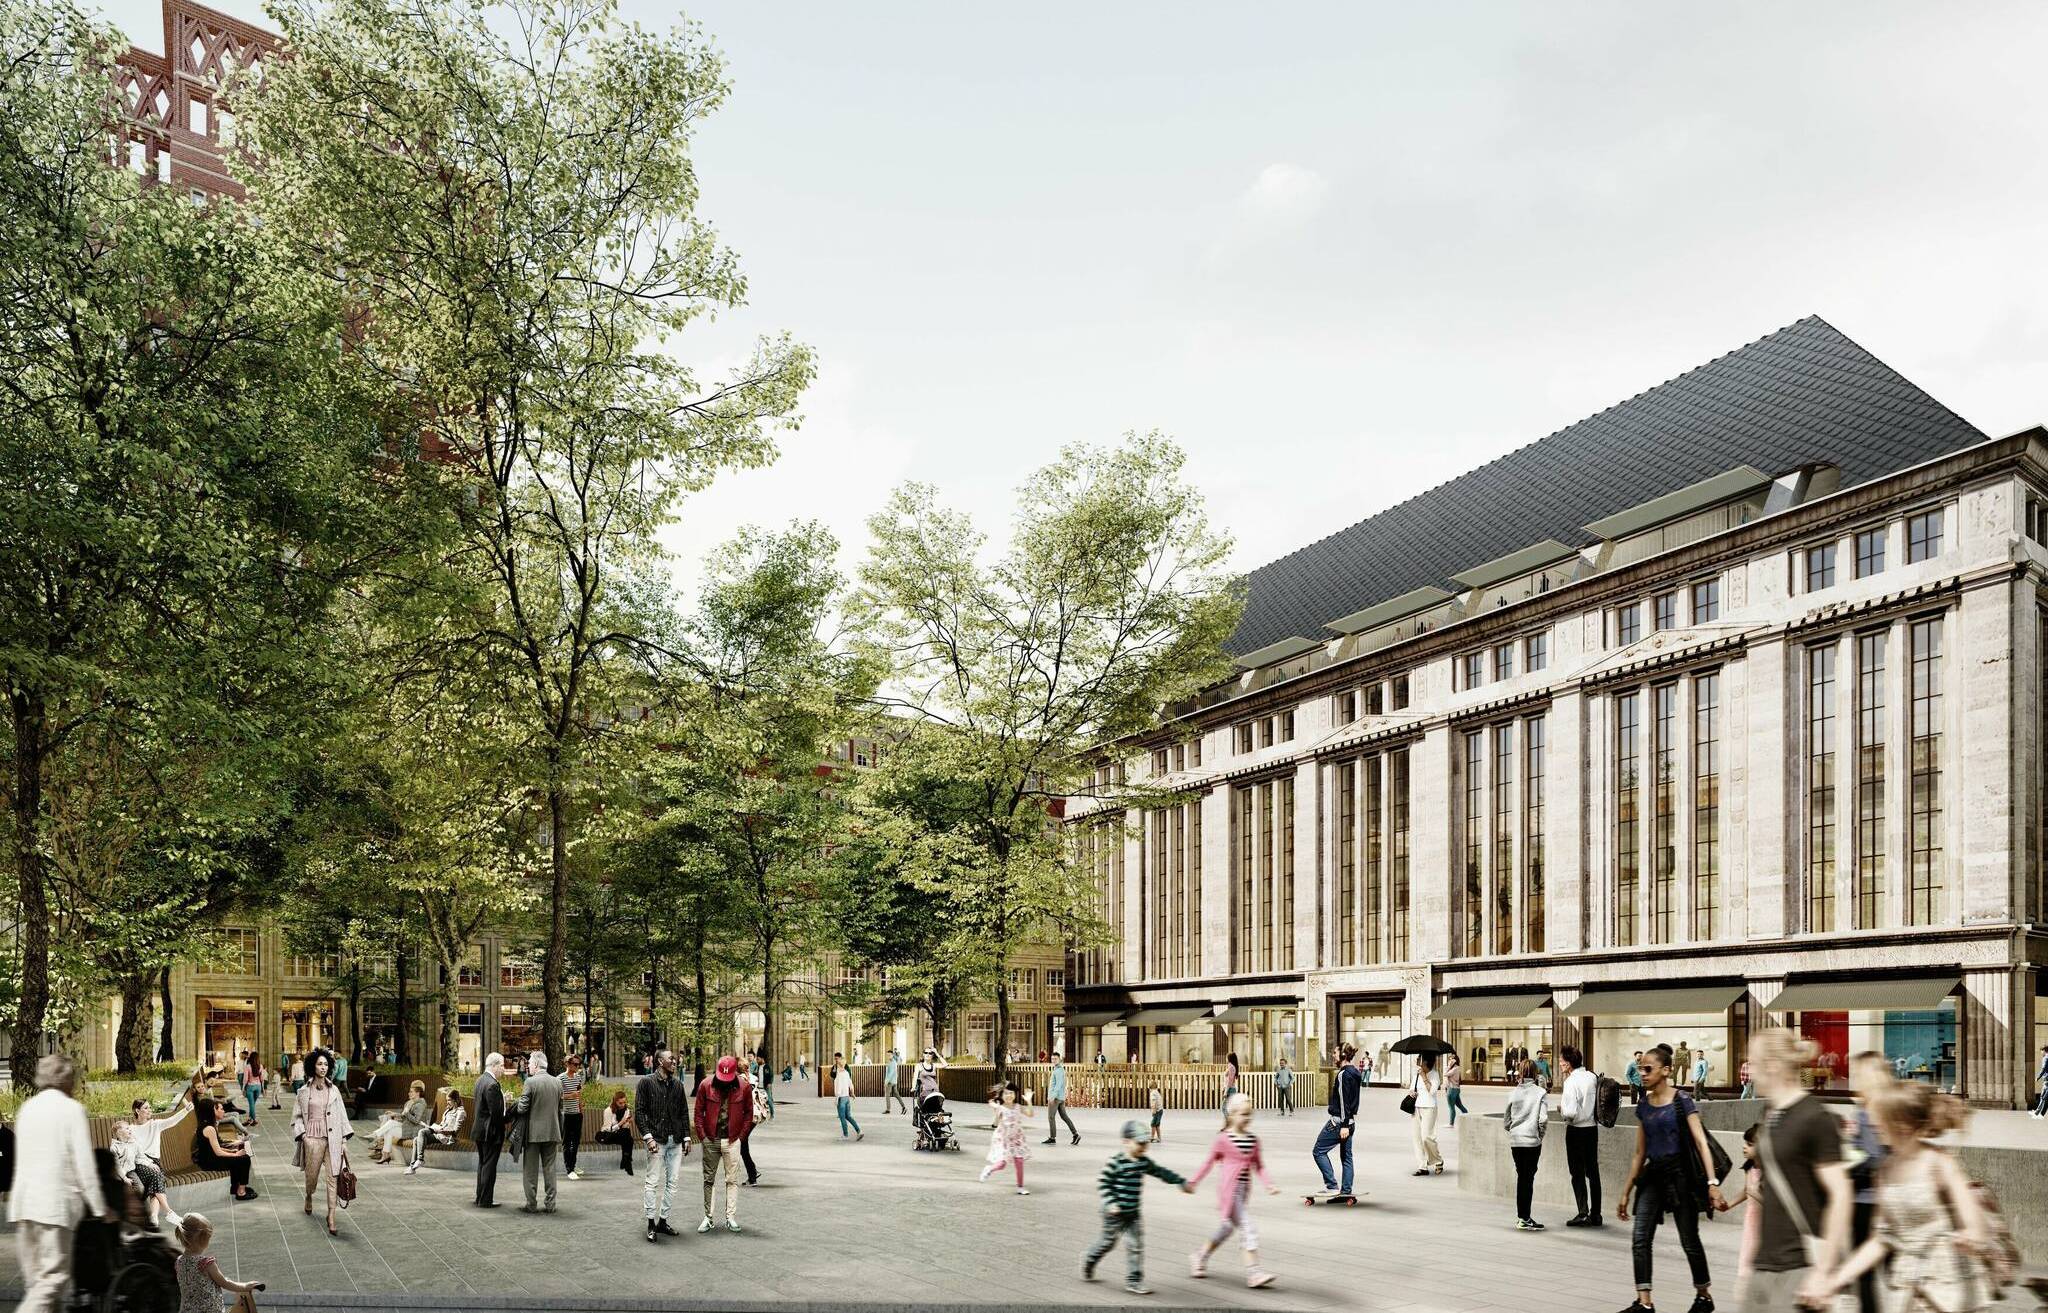  Die Animation bietet einen Blick auf den neu gestalteten Heinrich-Heine-Platz - ohne vielfach lieb gewonnenen Pavillon.   